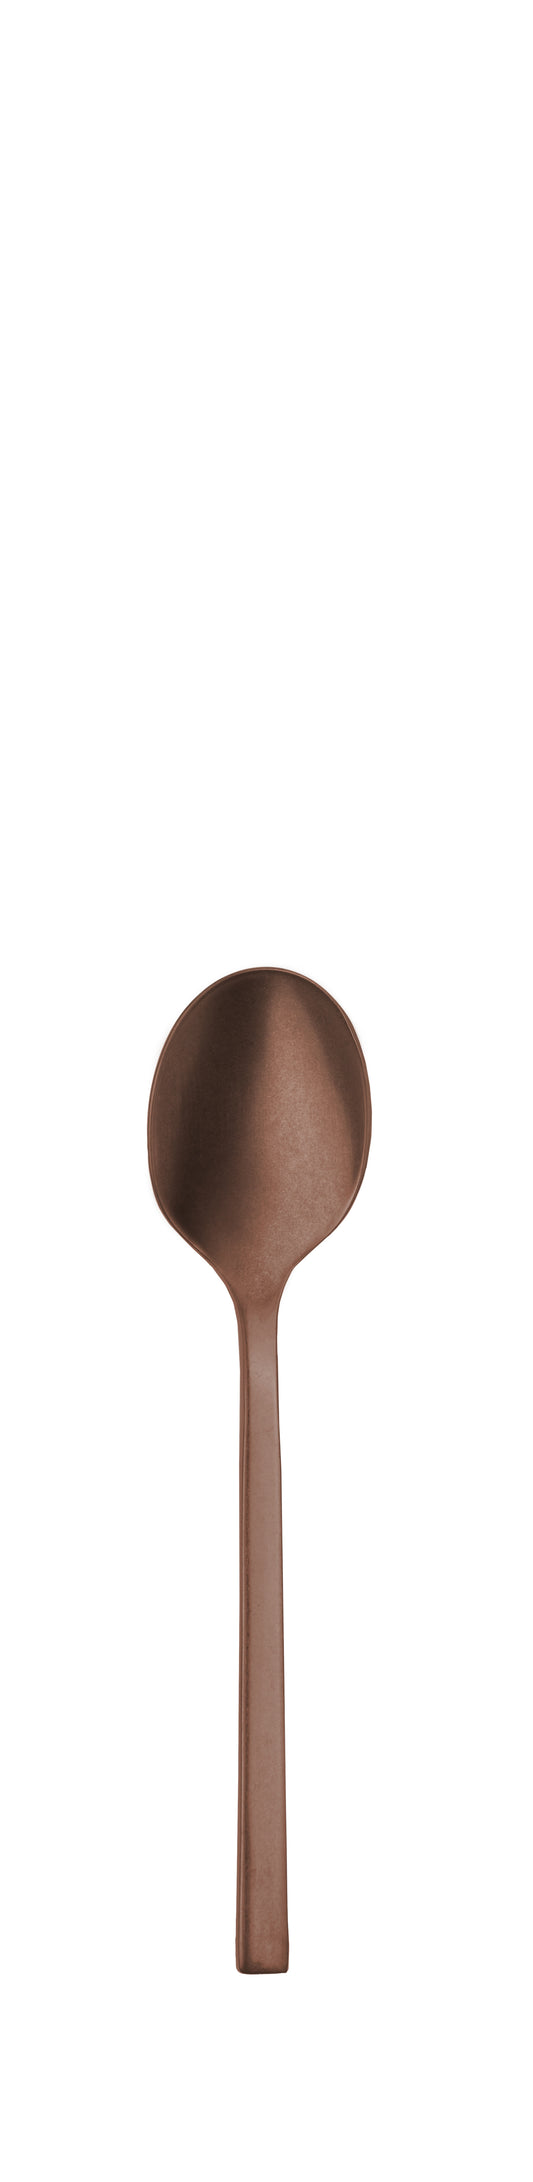 Coffee spoon PROFILE PVD copper stone 140mm